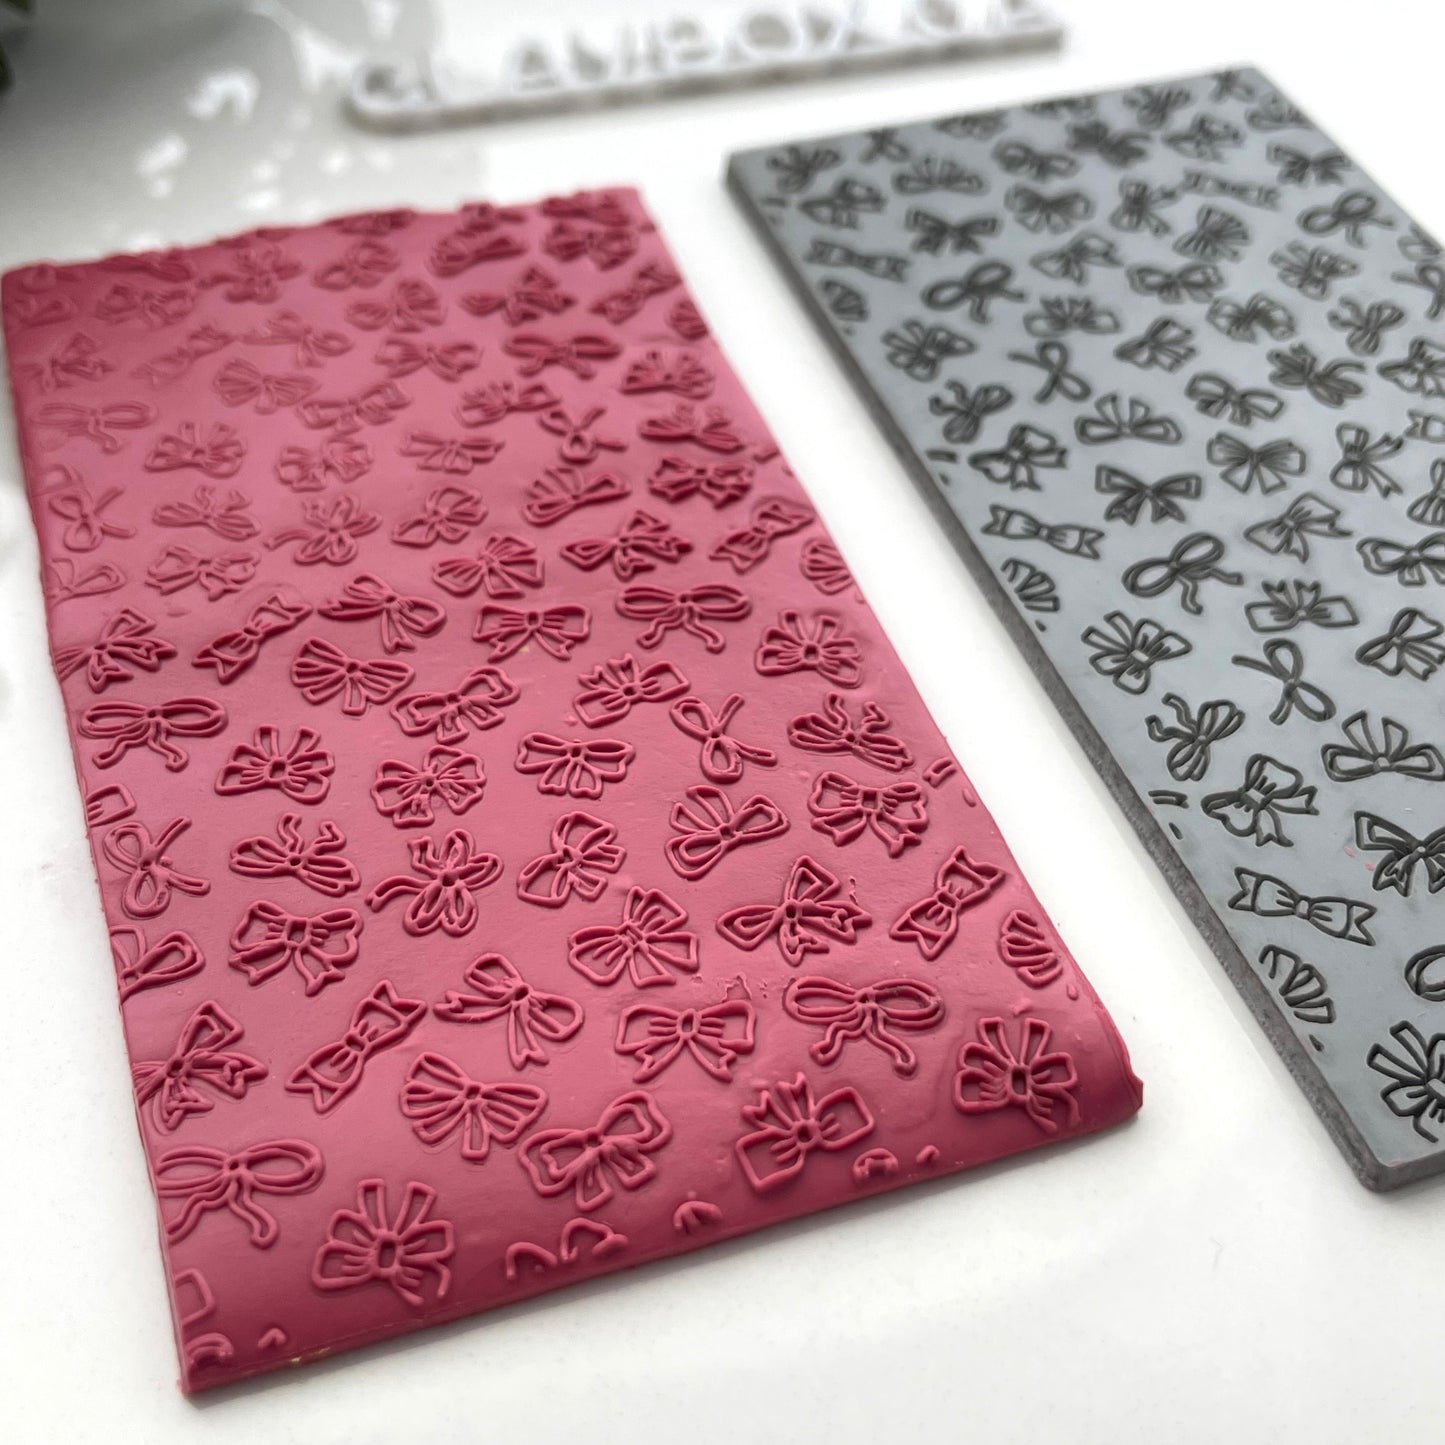 Ribbons and bows texture mat